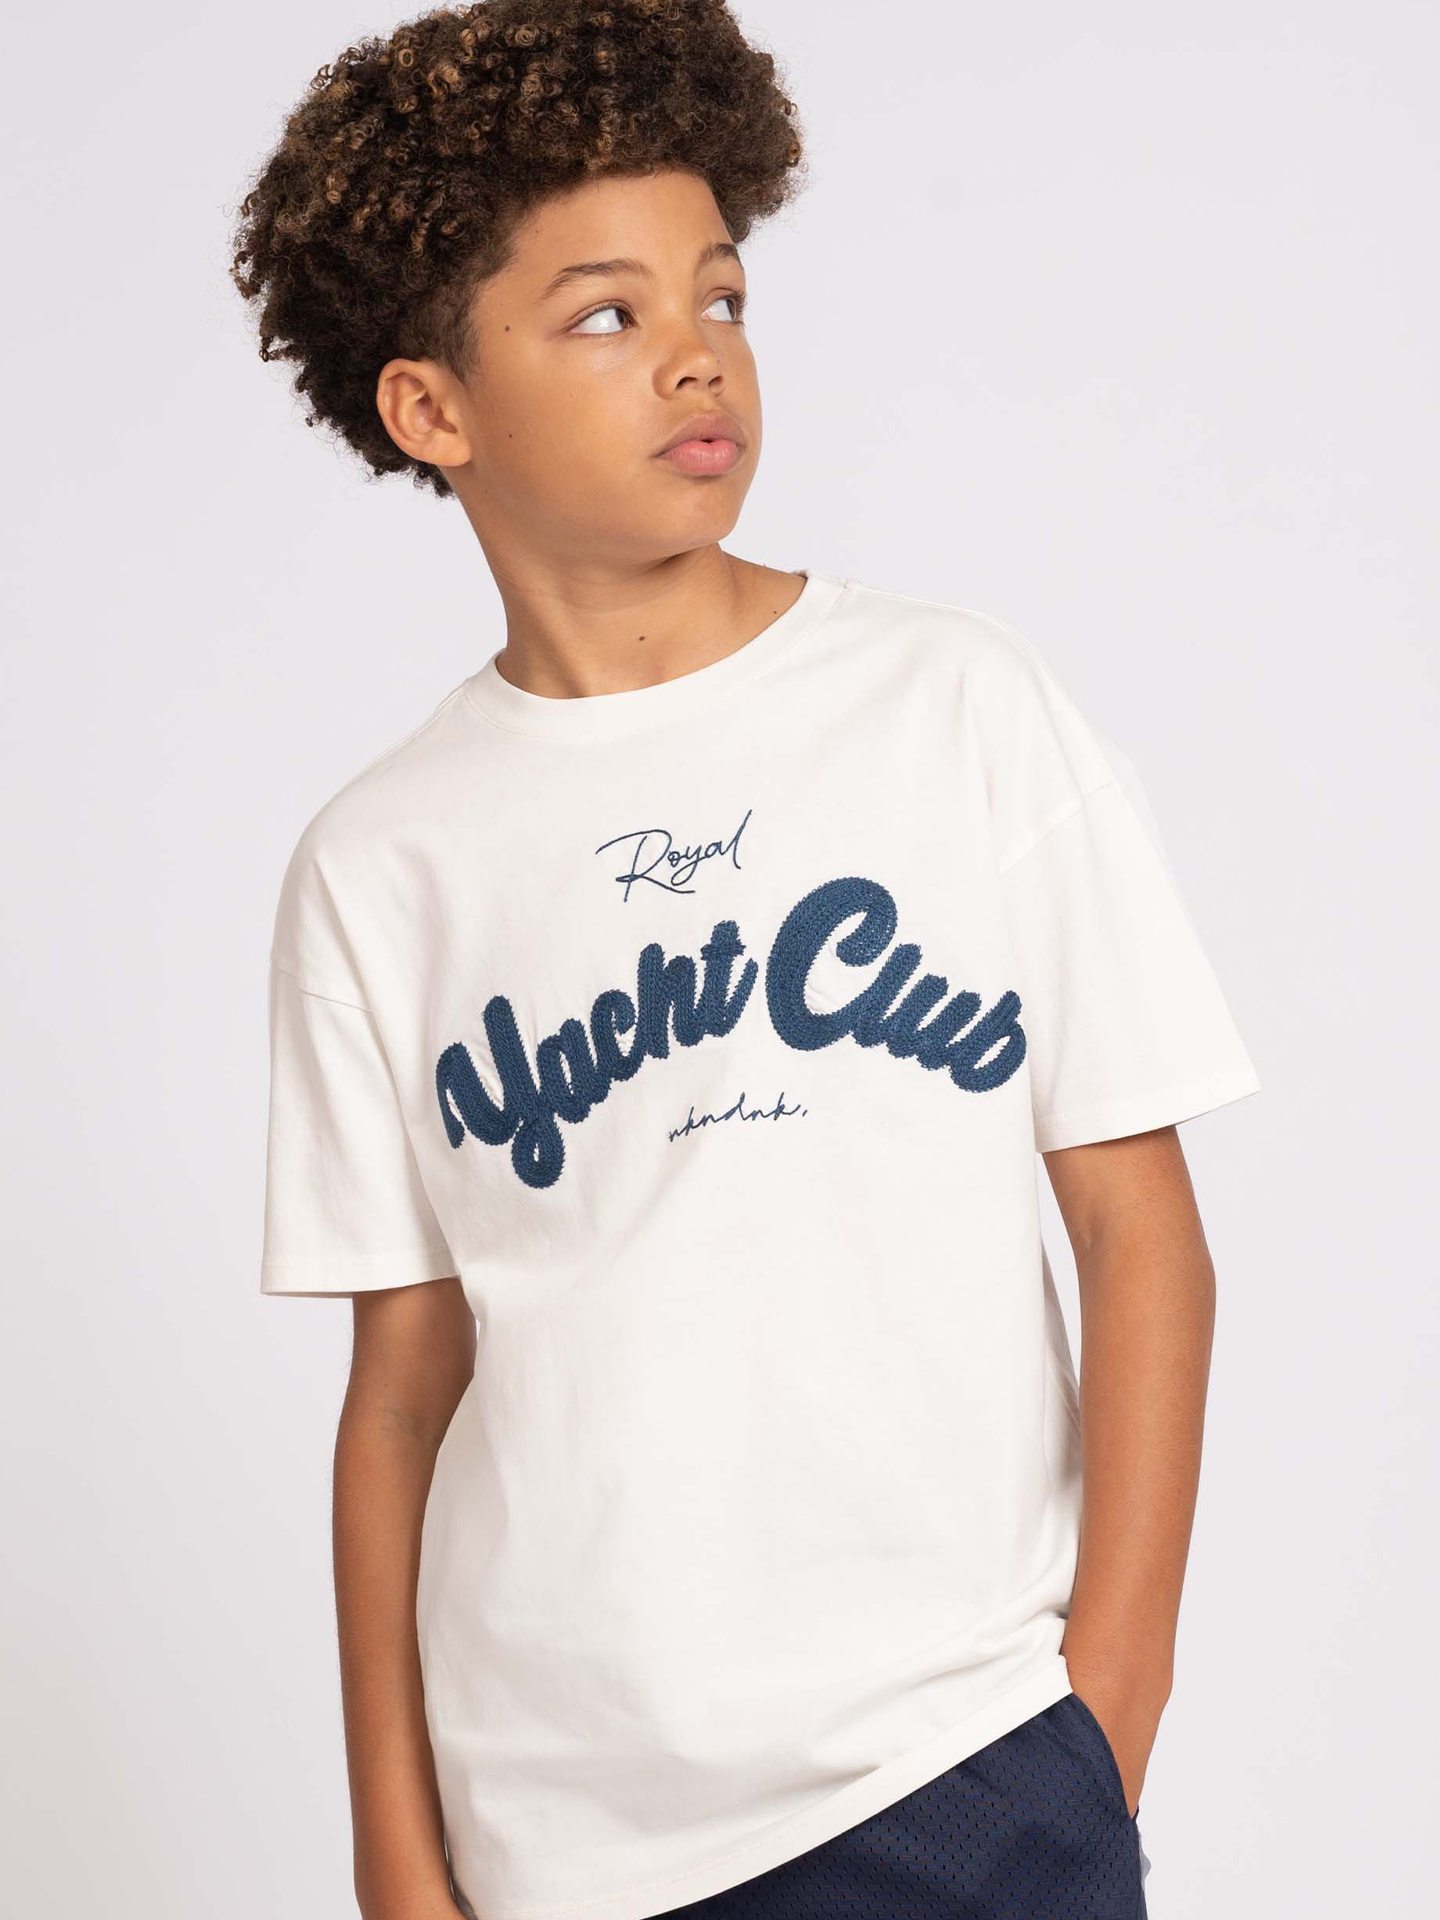 Yacht club T-shirt